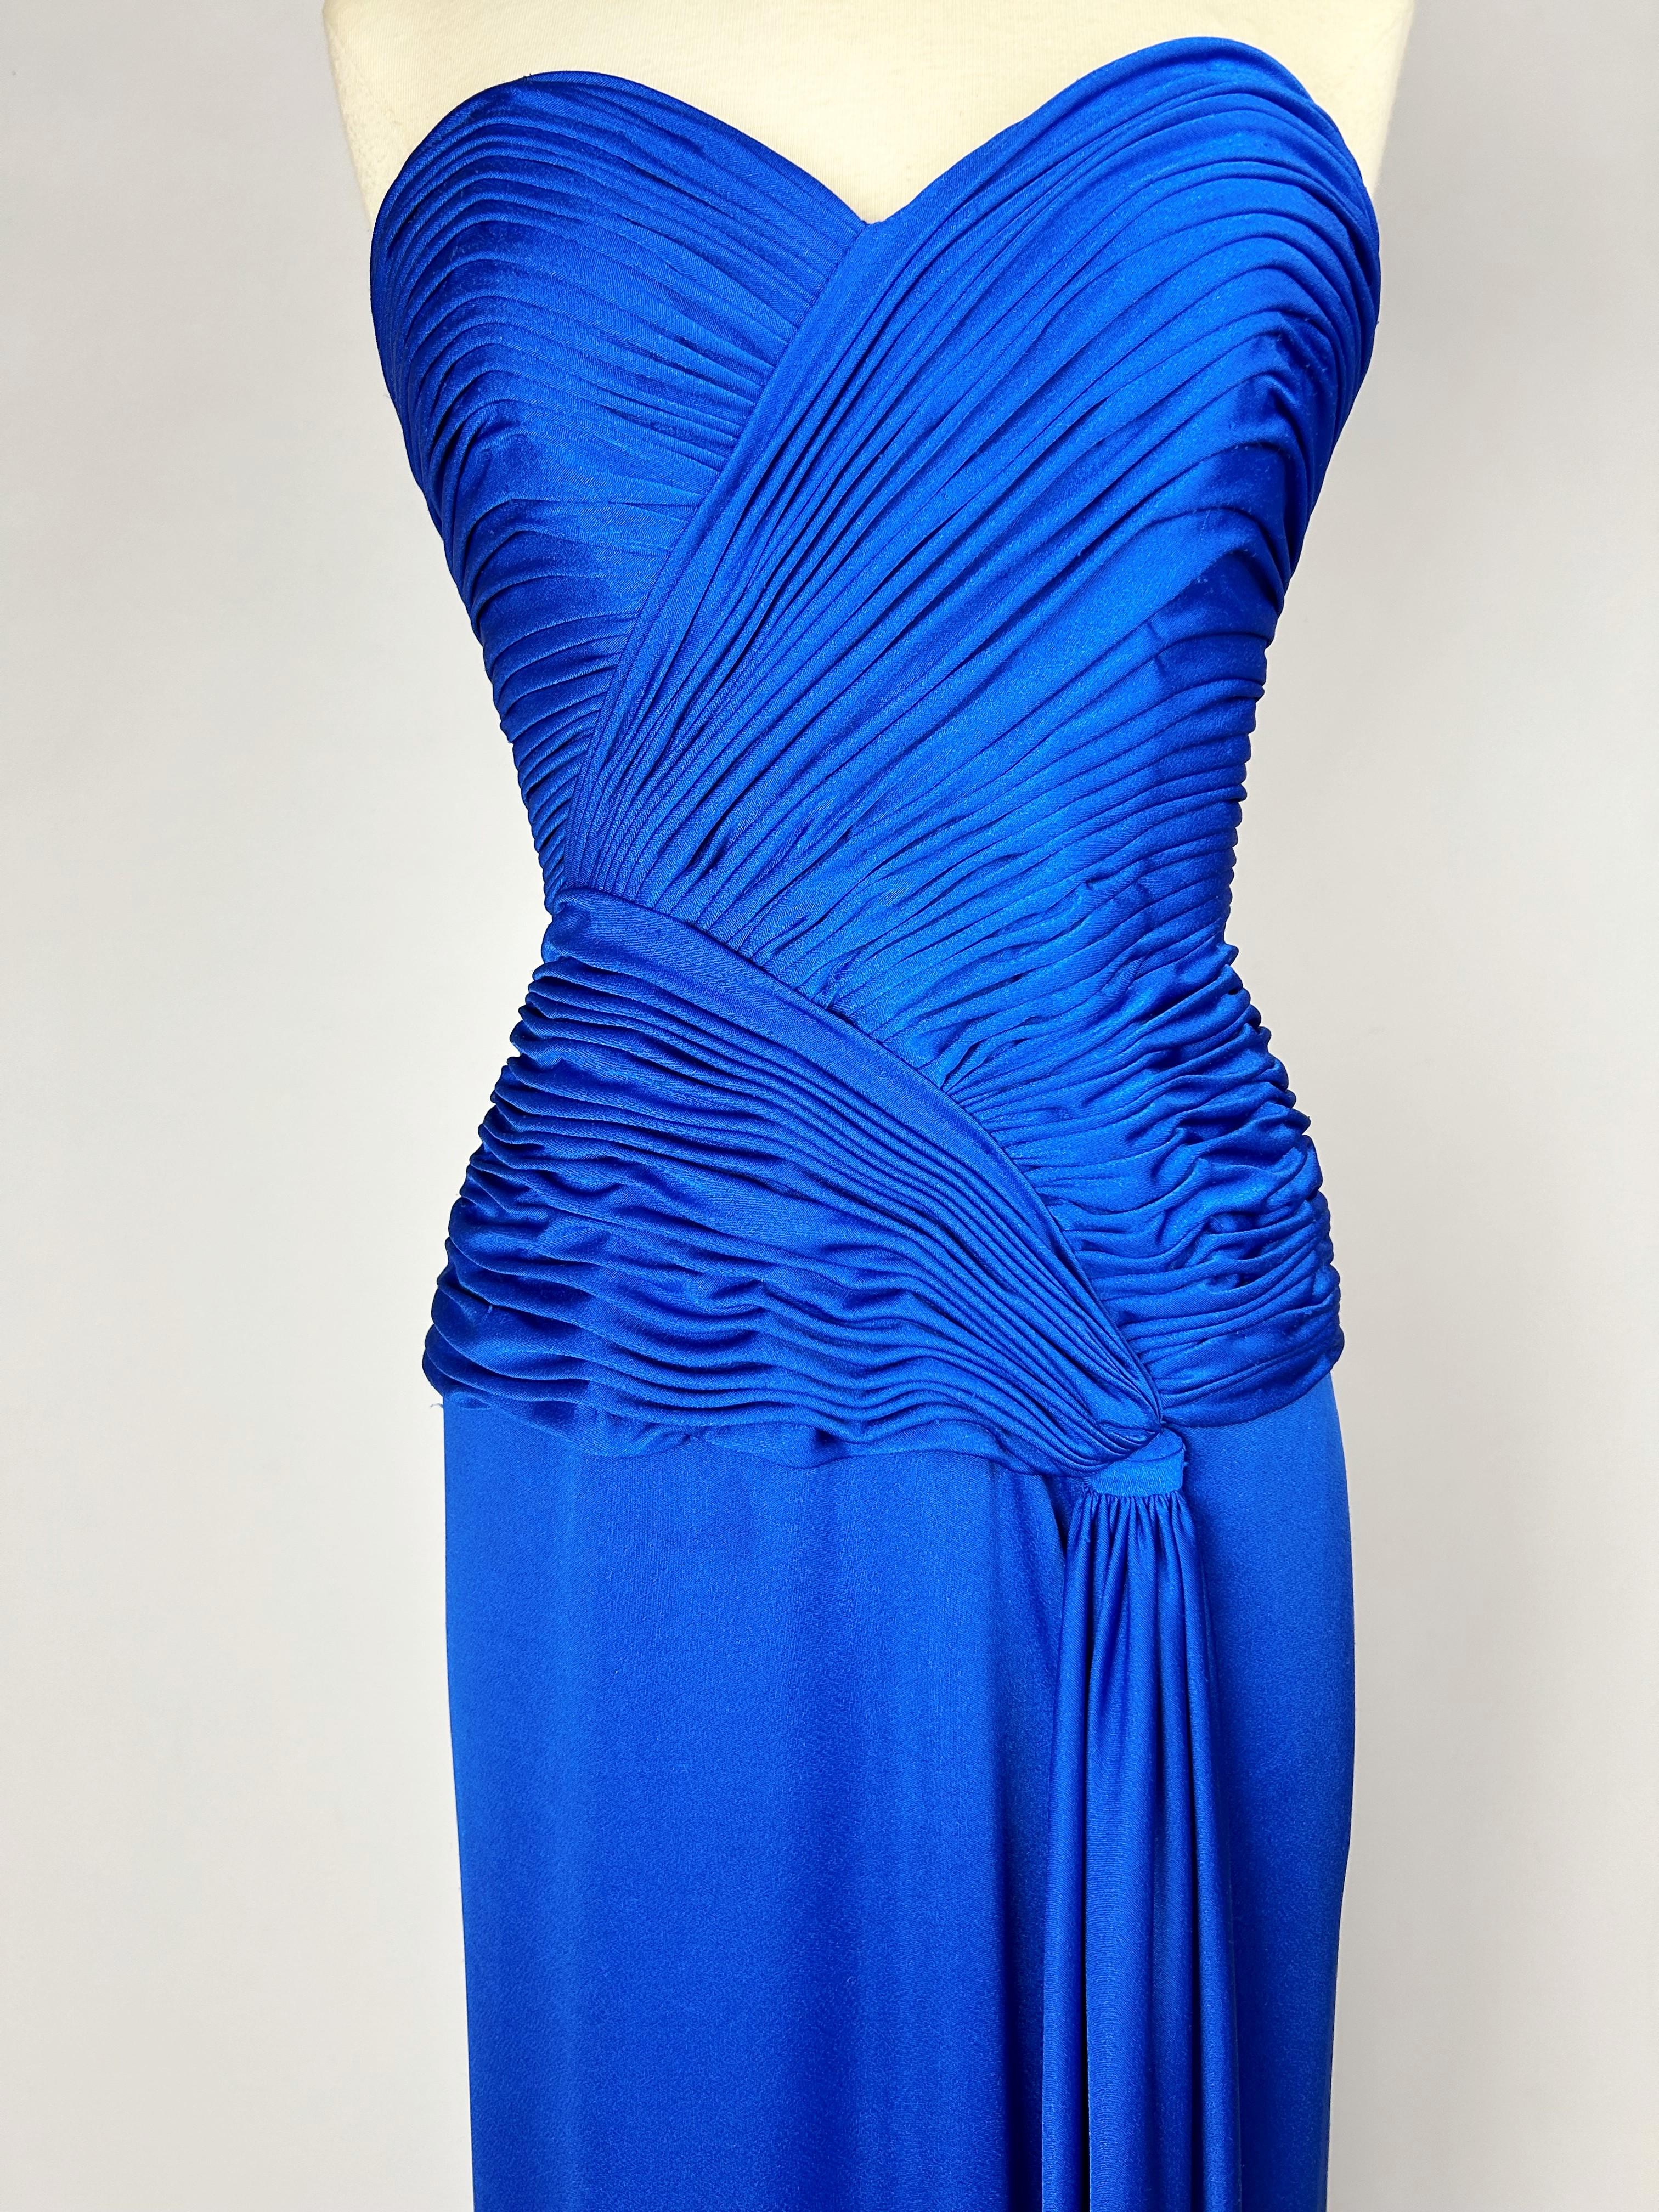 CIRCA 1980

Frankreich

Elektrisch blaues Abendkleid aus Lycra-Jersey von Loris Azzaro Couture aus den 1980er Jahren. Etuikleid mit großem Dekolleté und Reißverschluss am Rücken. Bustier mit asymmetrischen Kreuzfalten, die die Hüften betonen und mit